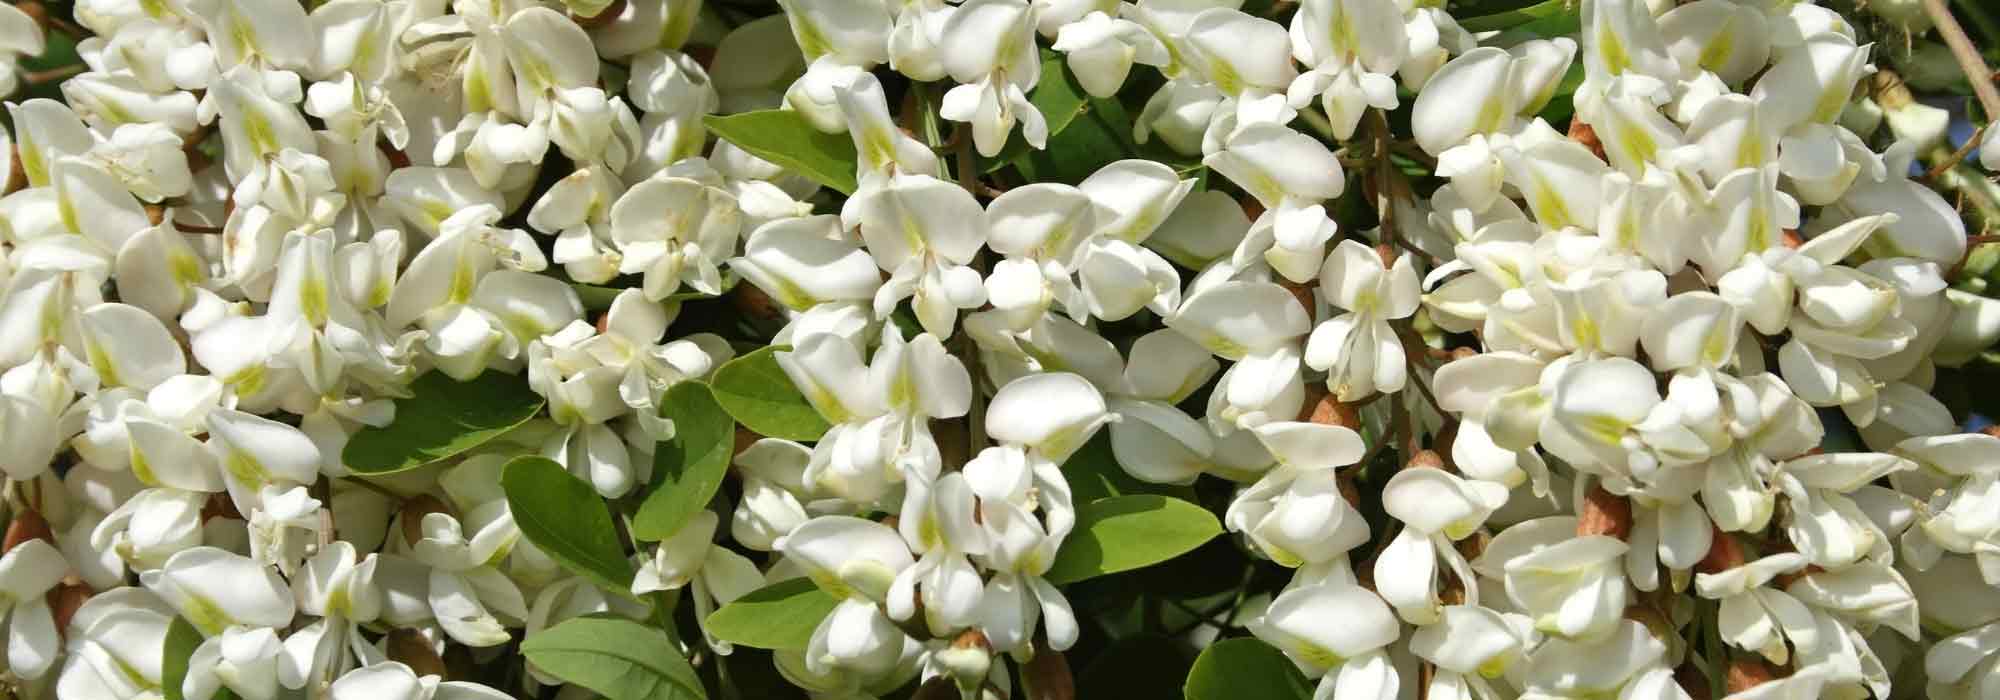 Arbre fleurs blanches